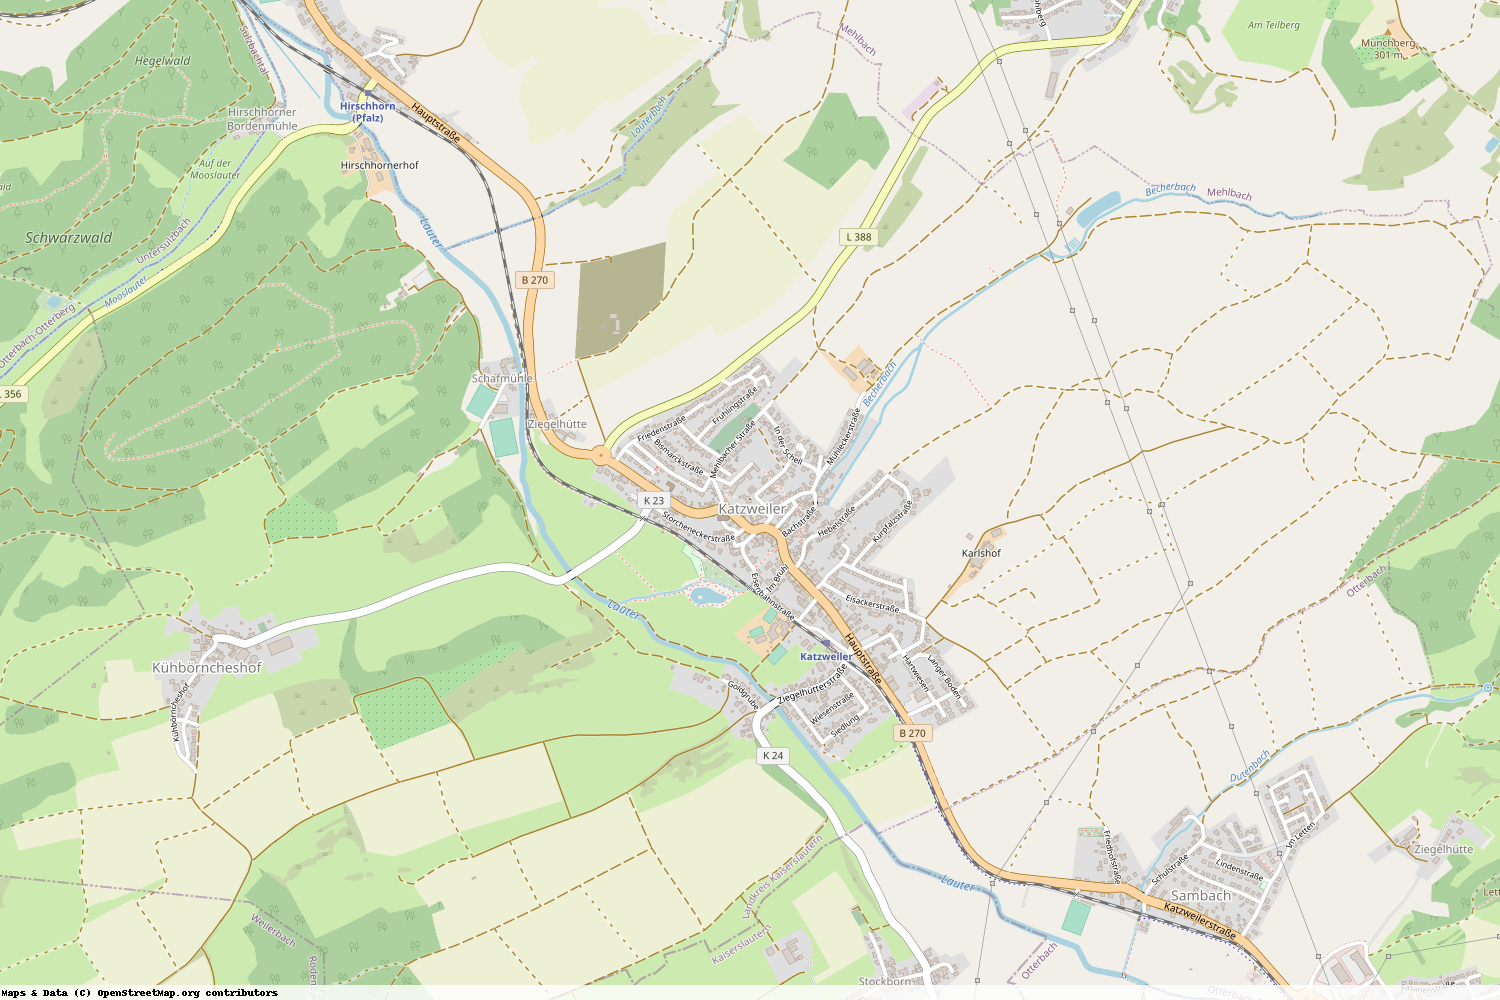 Ist gerade Stromausfall in Rheinland-Pfalz - Kaiserslautern - Katzweiler?